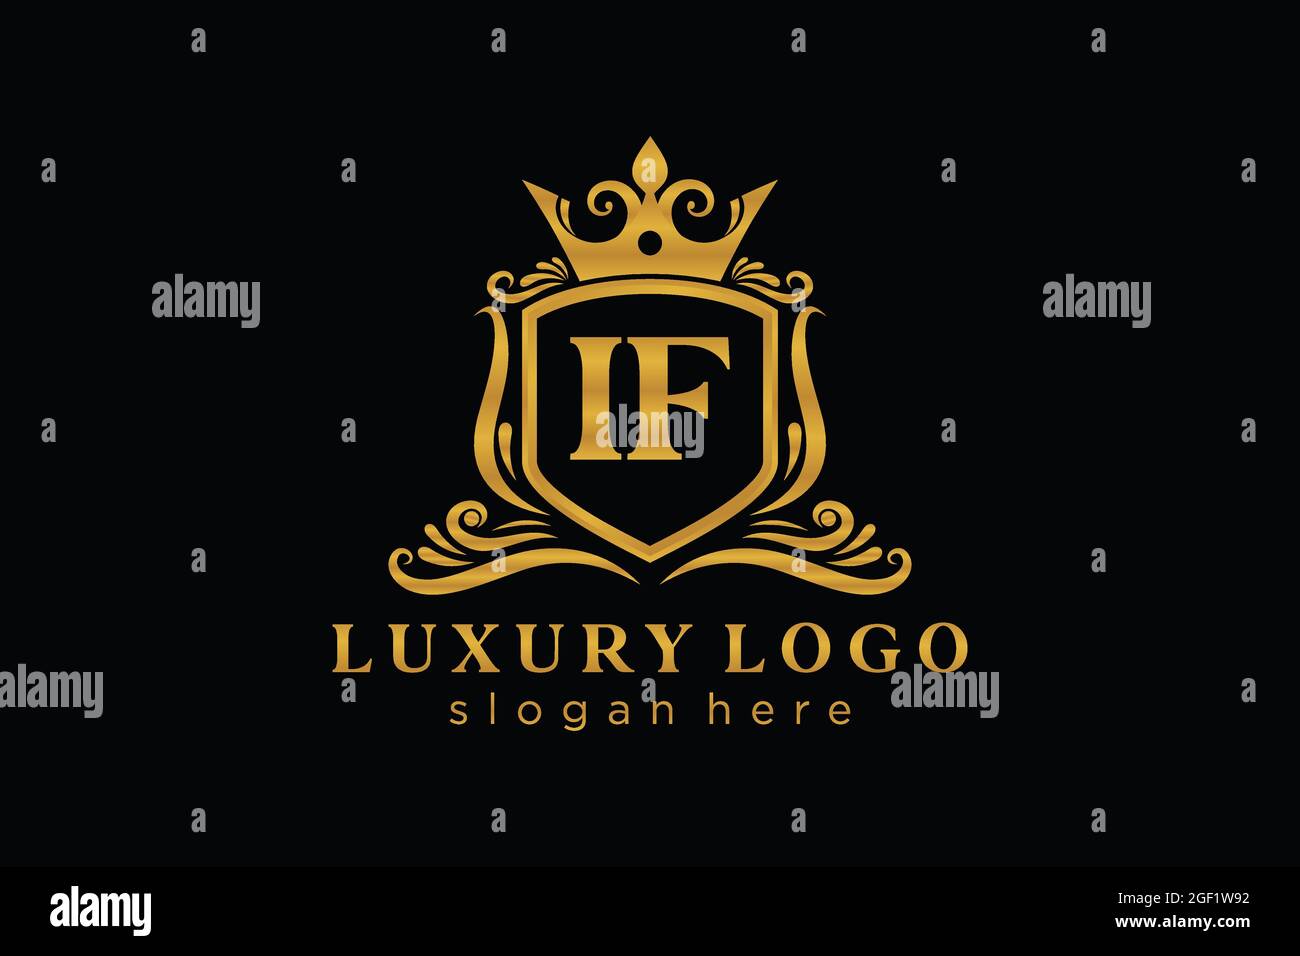 IF Letter Royal Luxury Logo Vorlage in Vektorgrafik für Restaurant, Royalty, Boutique, Cafe, Hotel, Heraldisch, Schmuck, Mode und andere Vektor illustrr Stock Vektor